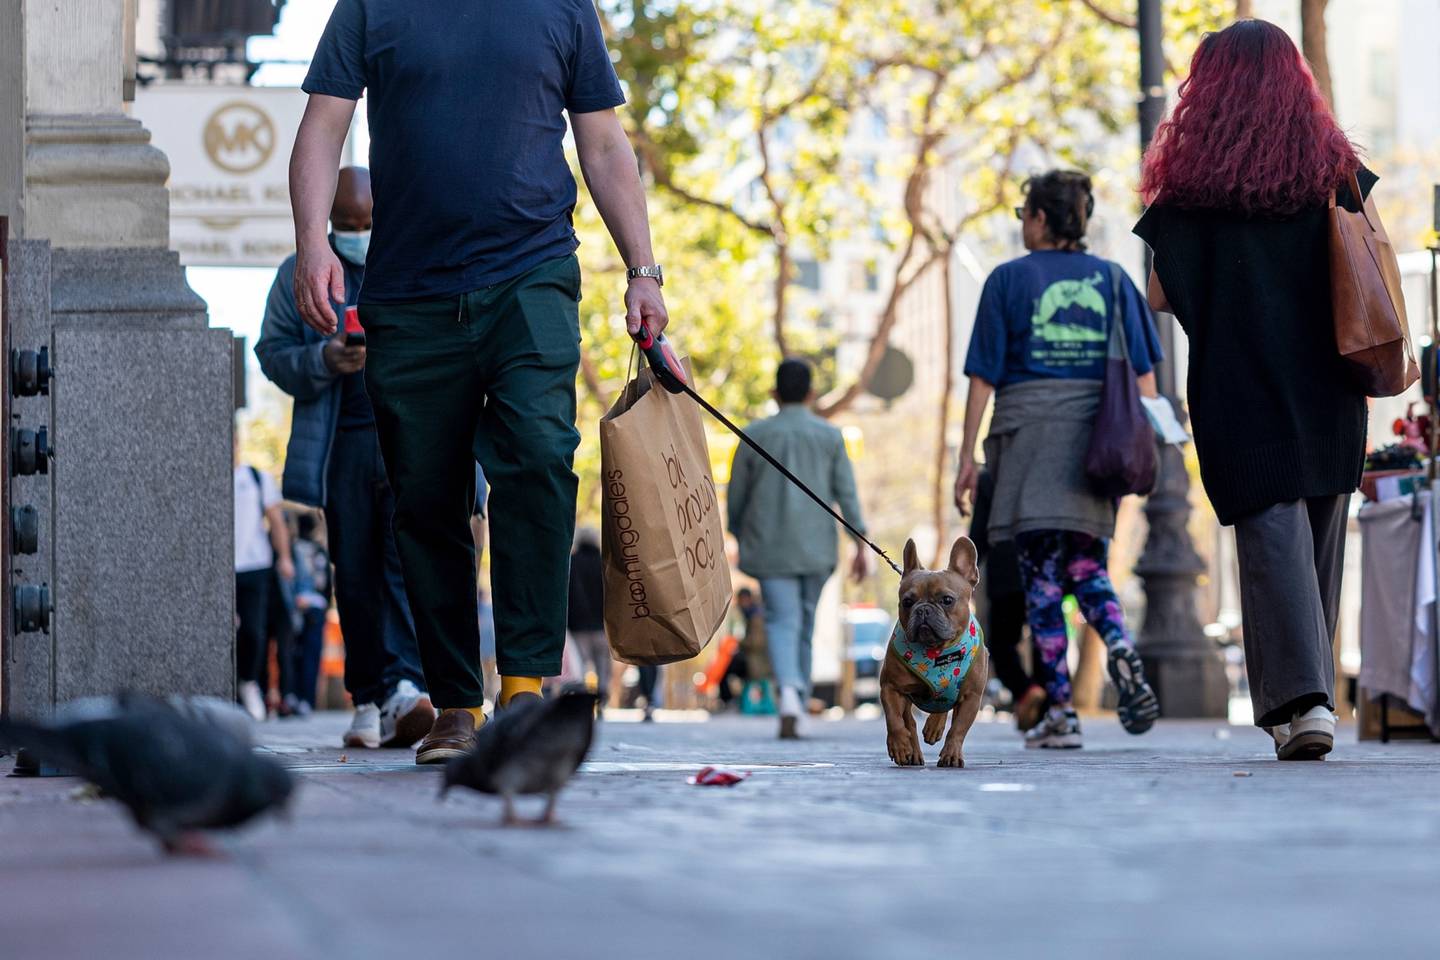 Un comprador lleva una bolsa mientras pasea a su perro en San Francisco, California, Estados Unidos, el jueves 29 de septiembre de 2022.